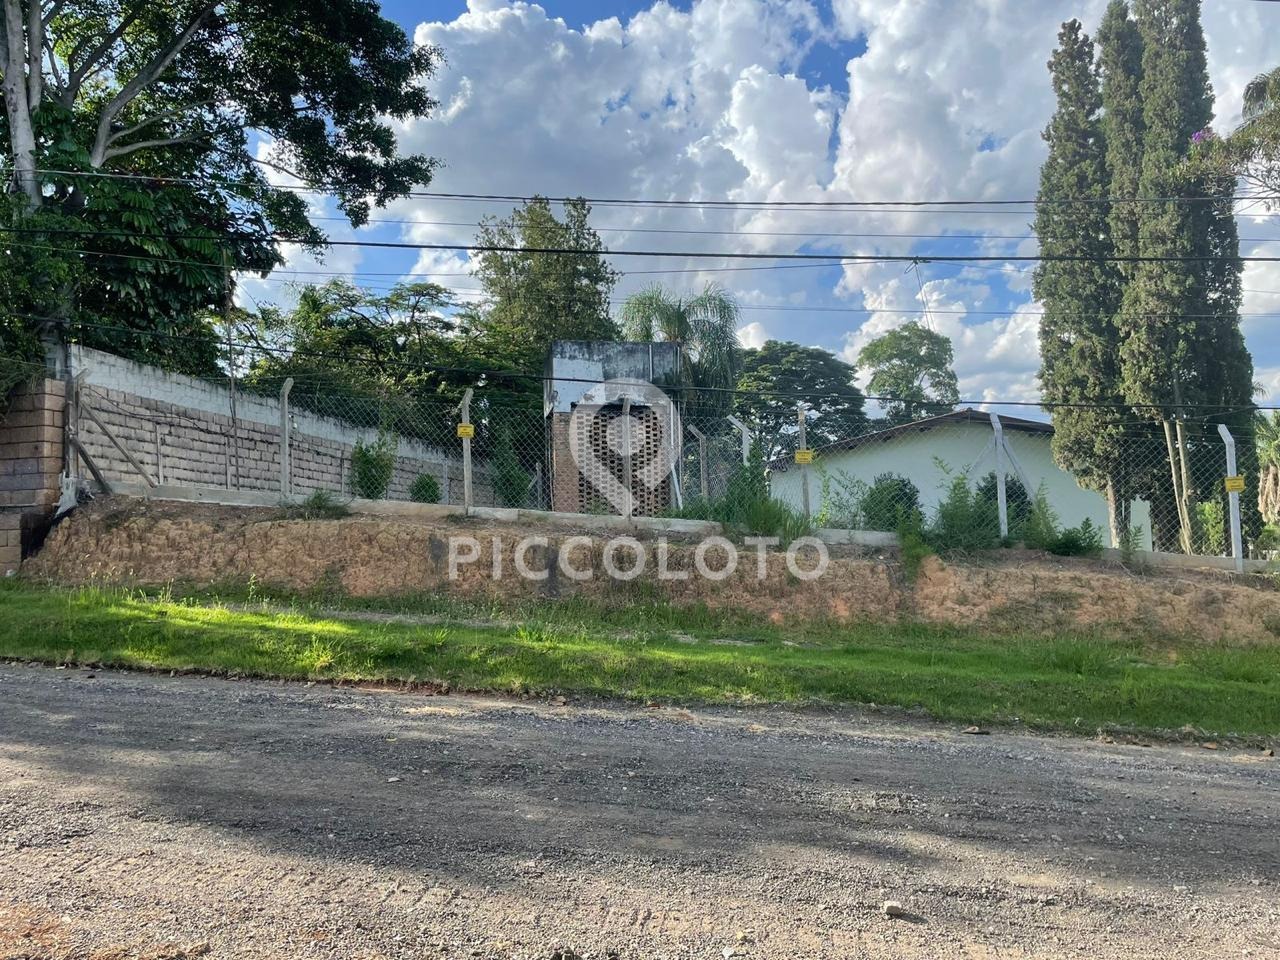 Piccoloto -Chácara à venda no Portal de Valinhos em Valinhos